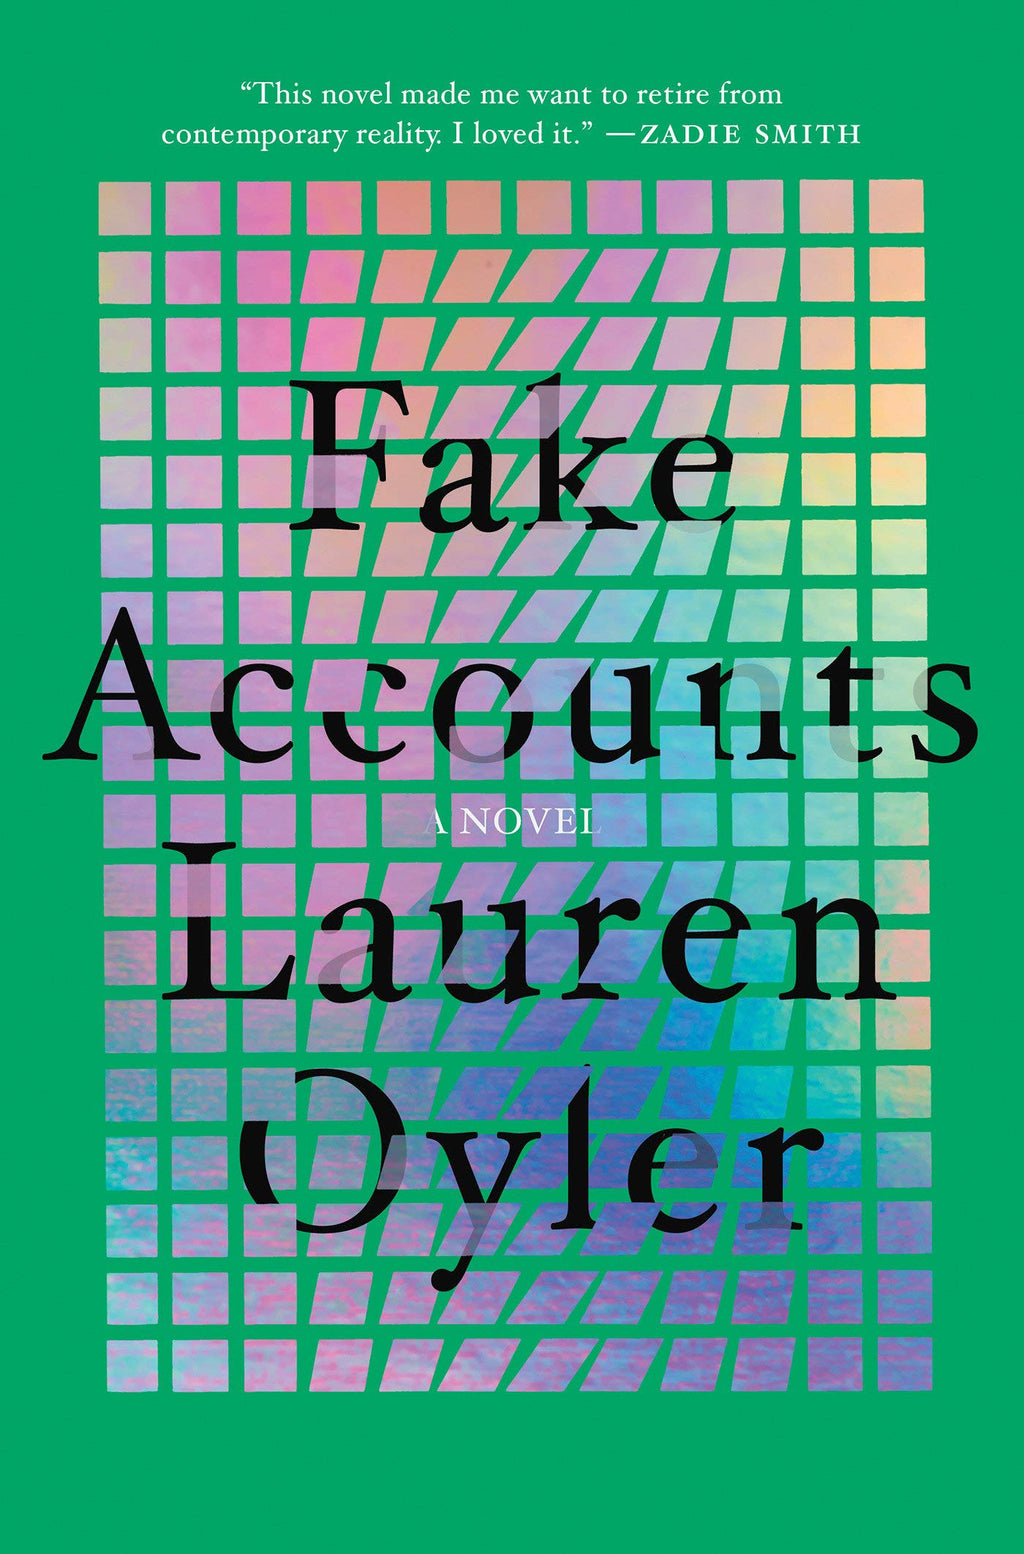 Fake Accounts by Lauren Oyler